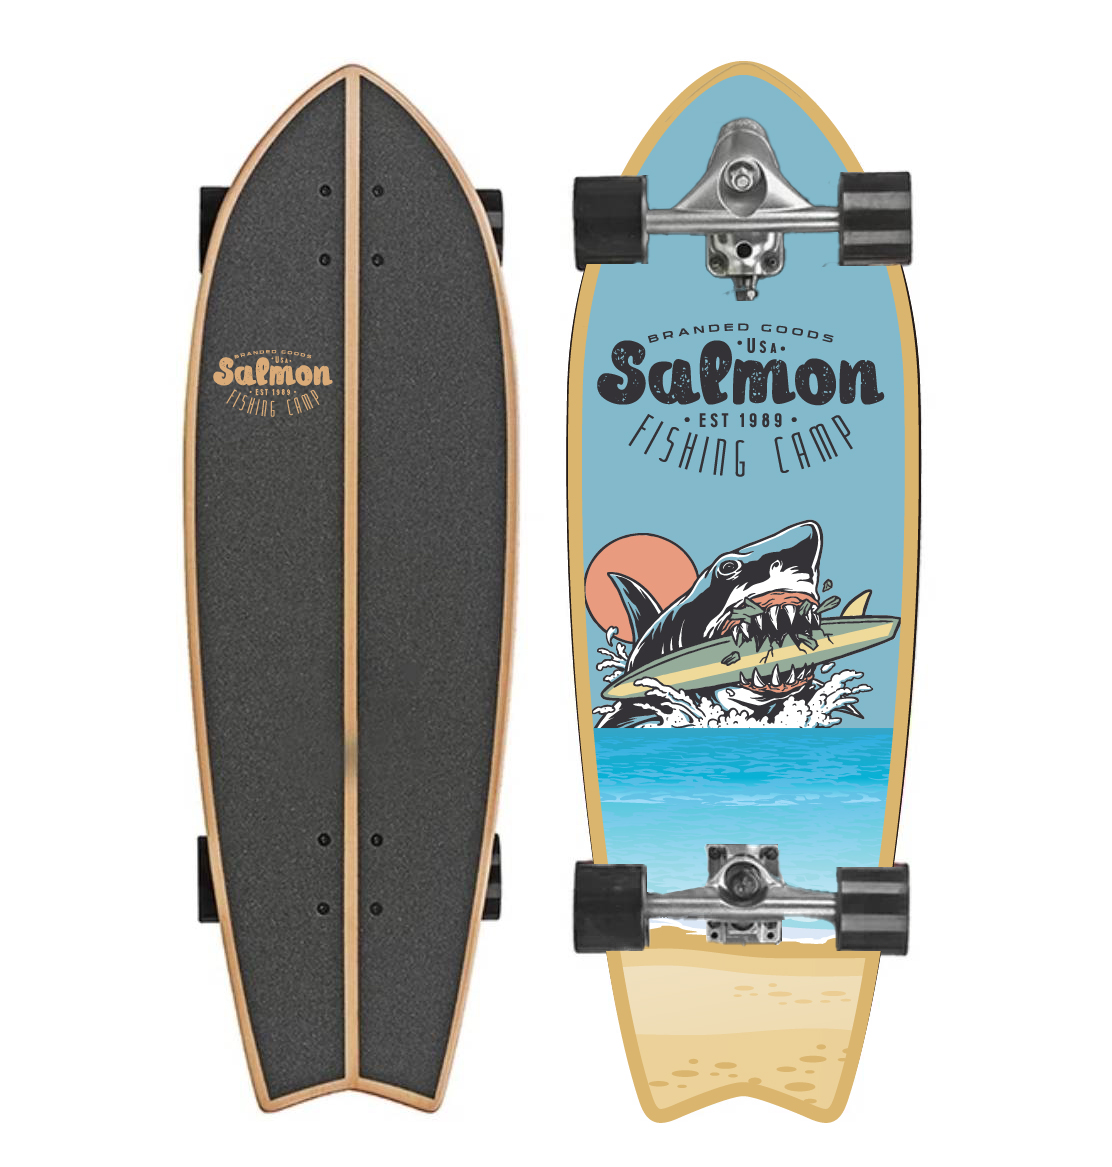 พร้อมส่ง !! SurfSkate CX7 ทรัคสปริงค์ Salmon Surf Skateboard ขนาดบอร์ด 30-32 นิ้ว